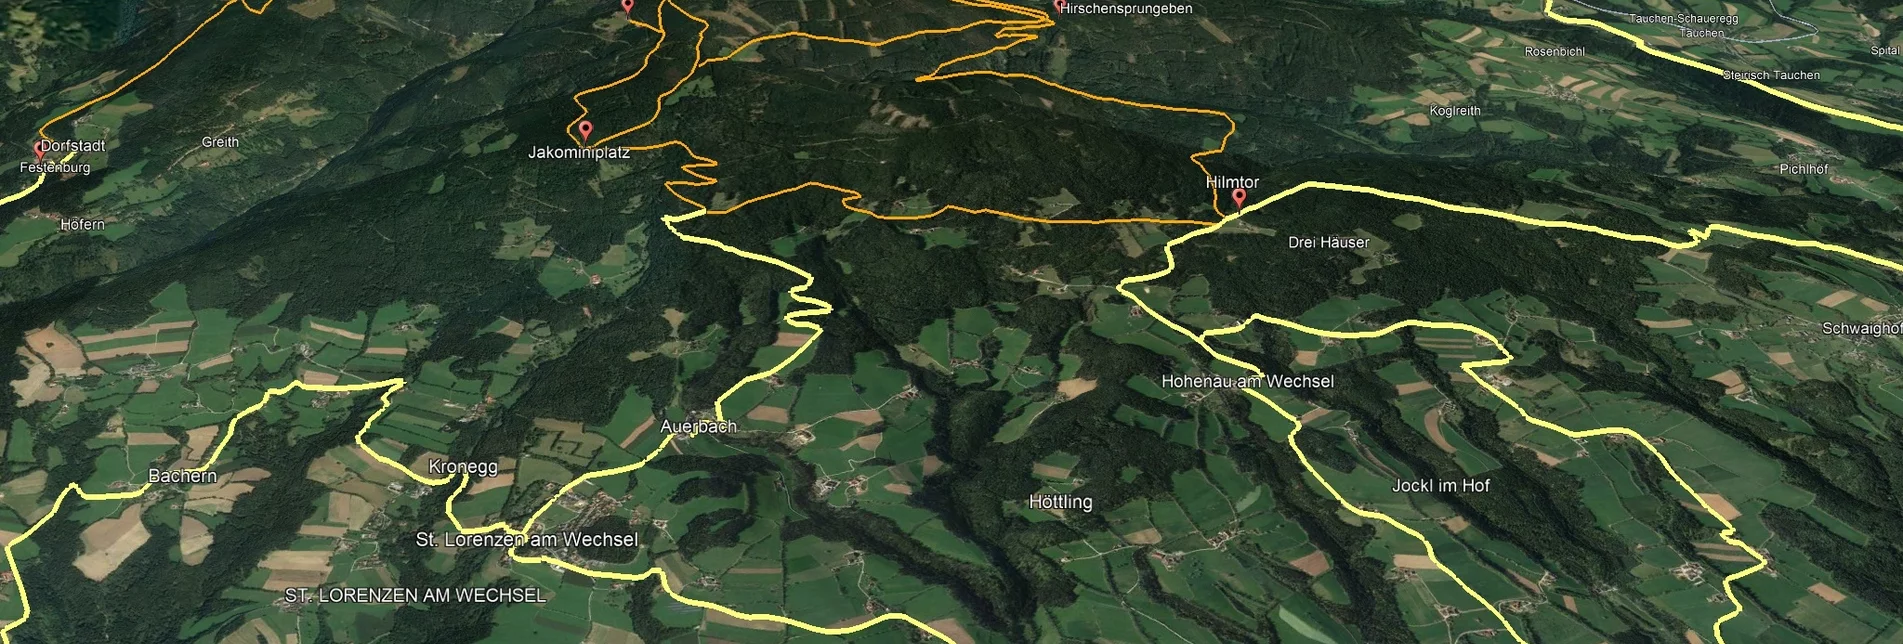 Mountain Biking Styrian Wexl Trails - Hirschsprungeben Route - Touren-Impression #1 | © Verein Tourismusentwicklung Steirischer Wechsel